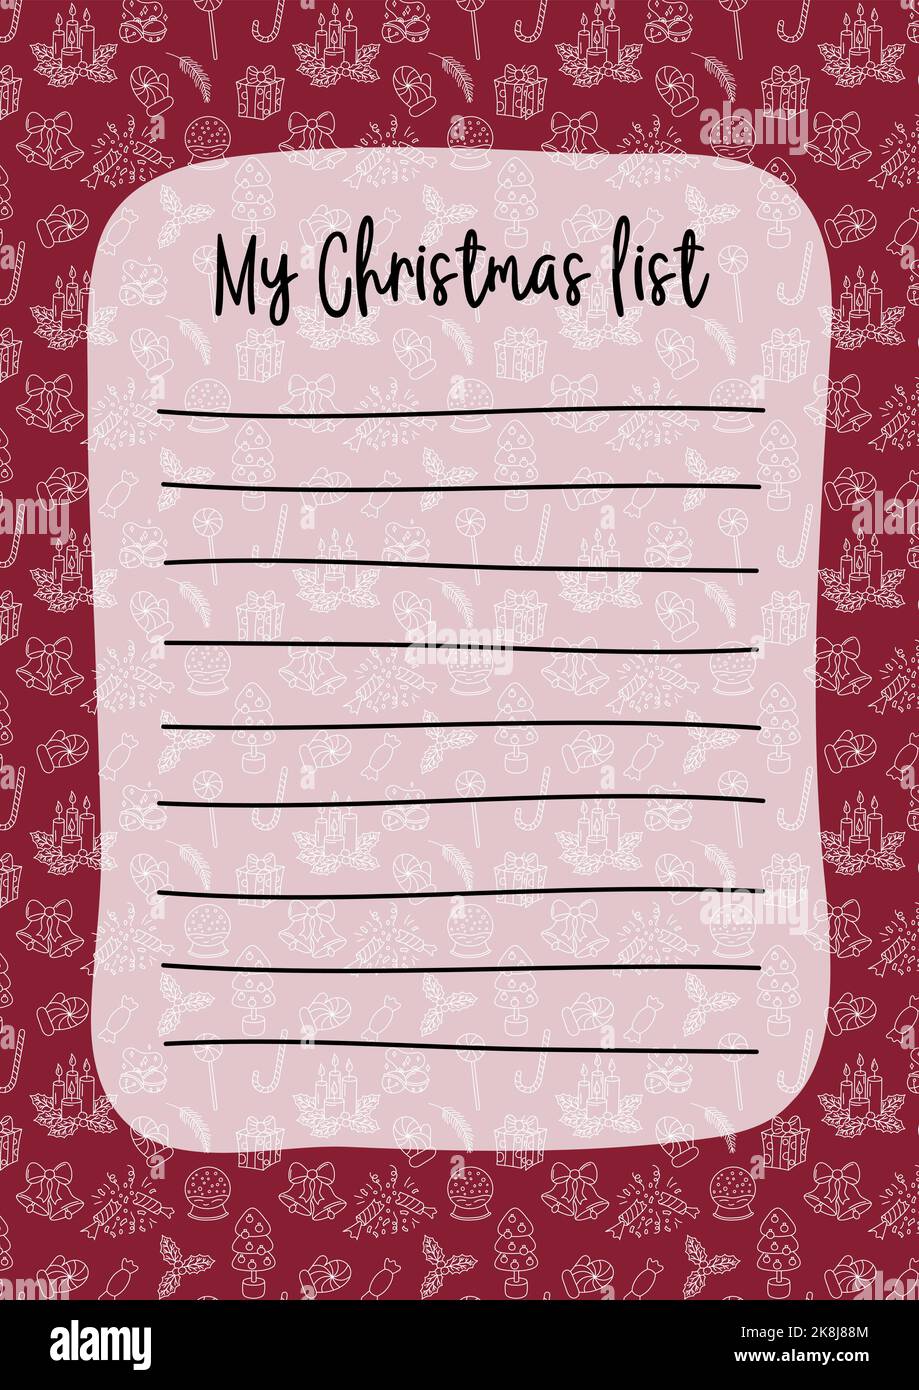 Modello vuoto della lista dei desideri di Natale. Wishlist di Natale vuota con spazio di copia. Dicembre doodles sfondo. Illustrazione vettoriale. Formato carta verticale A4 Illustrazione Vettoriale